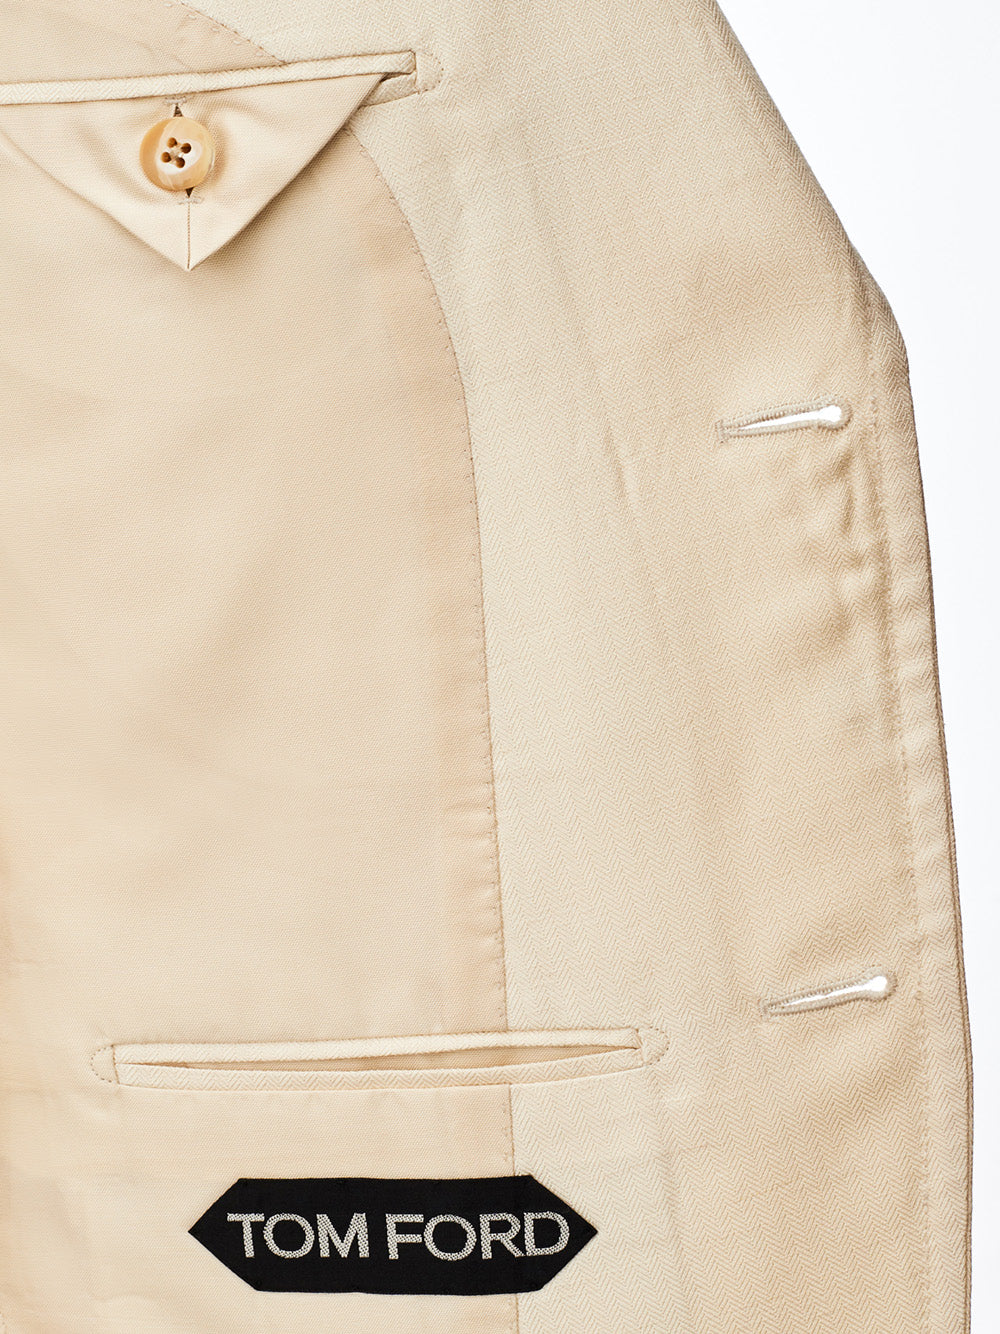 Tom Ford Silk Blend Destructured Beige Jacket